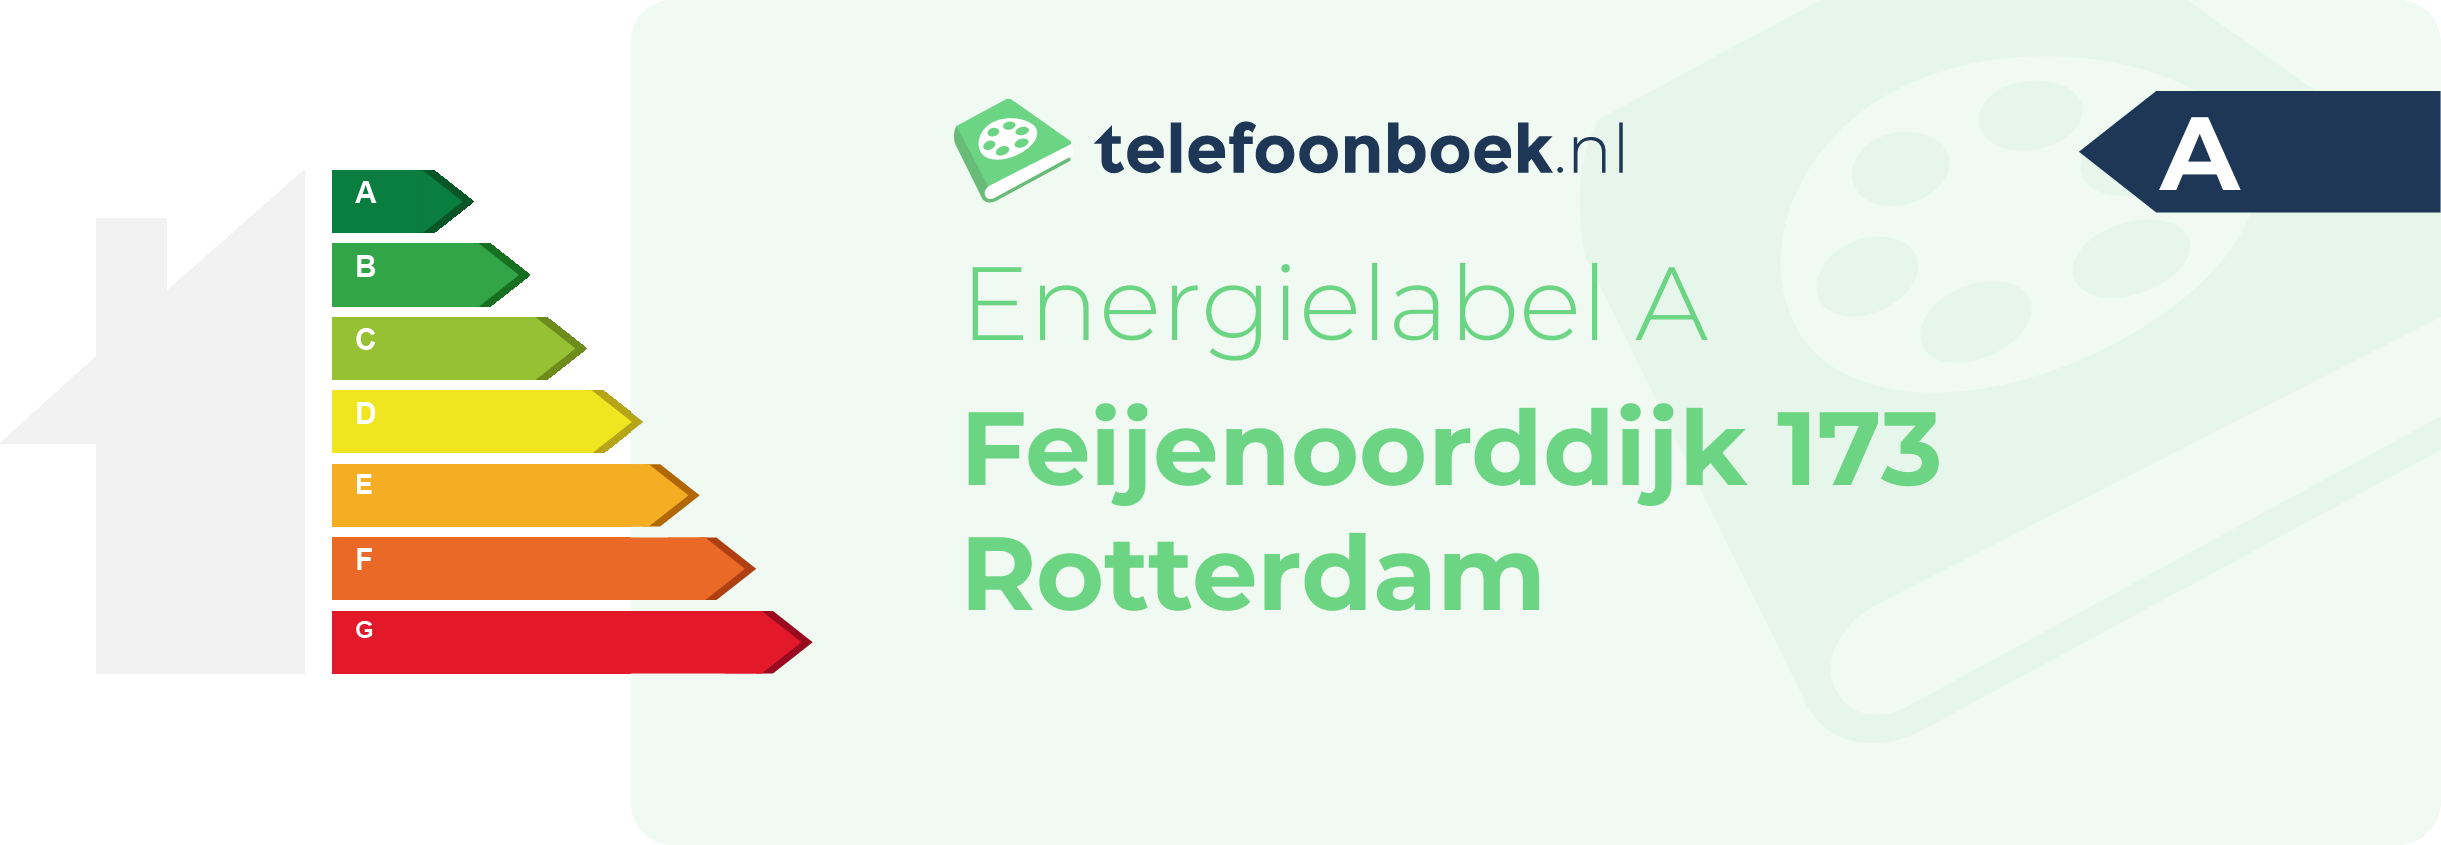 Energielabel Feijenoorddijk 173 Rotterdam